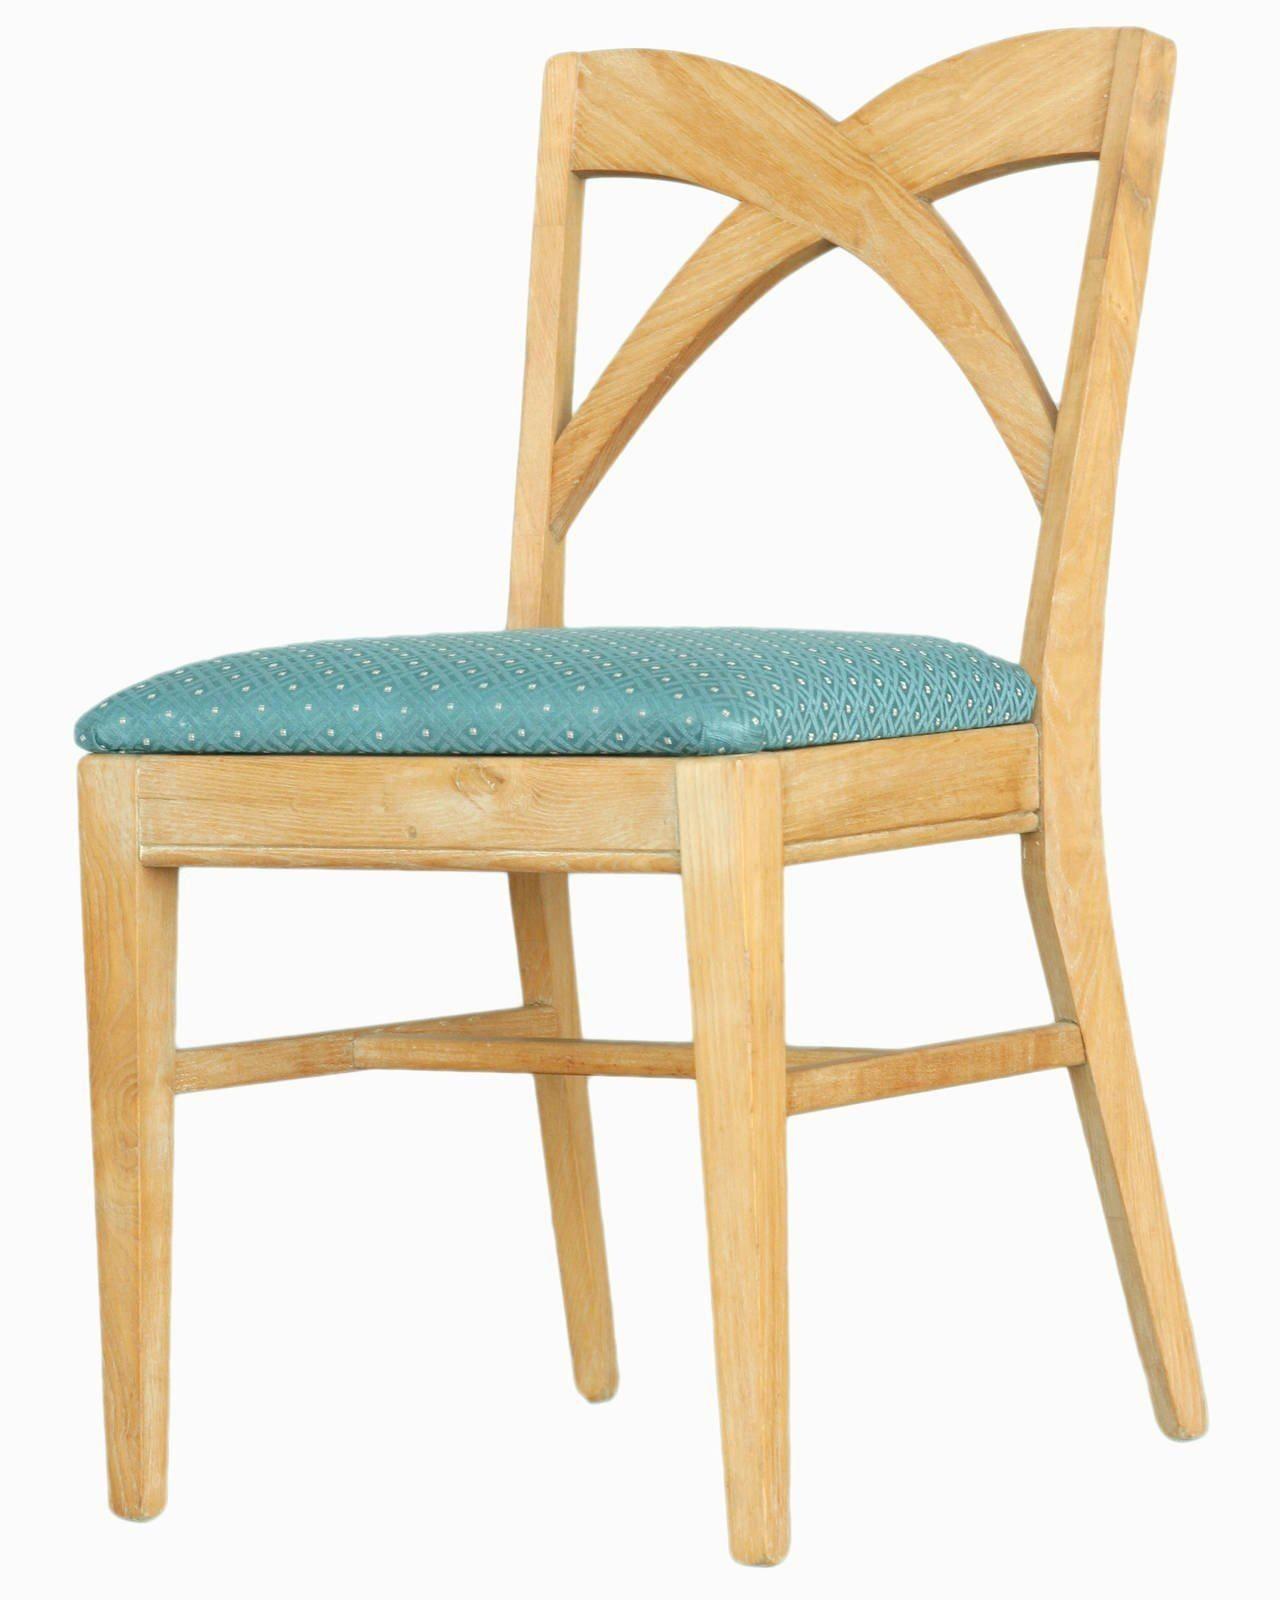 Esszimmerstühle von Paul Frankl für die Gruppe Brown Saltman. Die Stühle sind mit einem hochwertigen blauen Baumwollstoff gepolstert und haben eine einzigartige kreuzförmige 